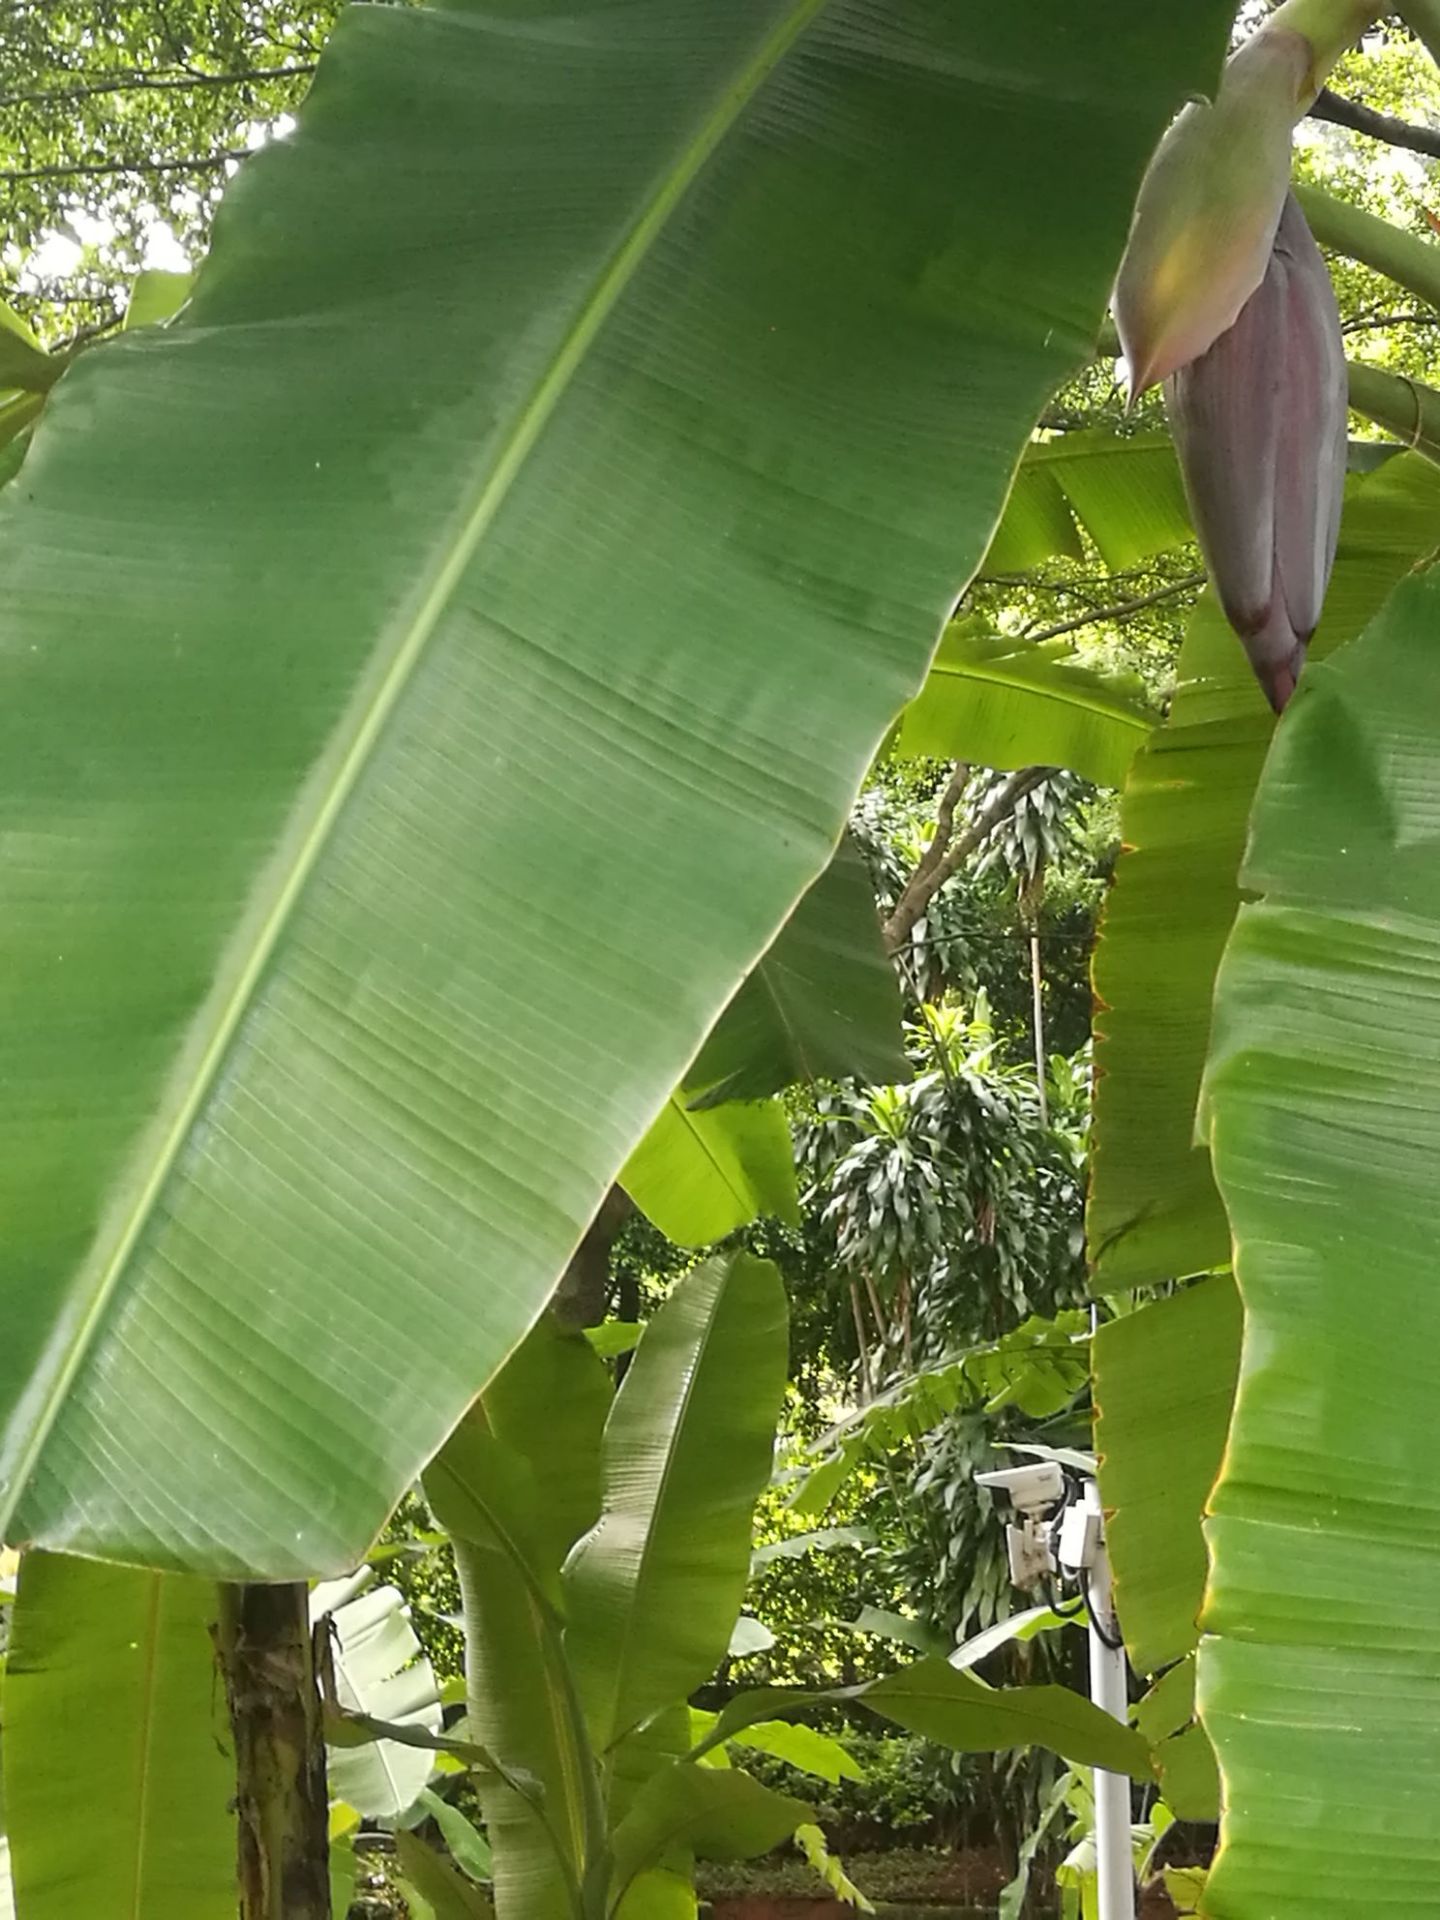 香蕉初长时，传说中香蕉花也能吃哦😊北方人没吃过呢，有机会品尝下了😁长差不多了把香蕉花砍掉，一颗香蕉树